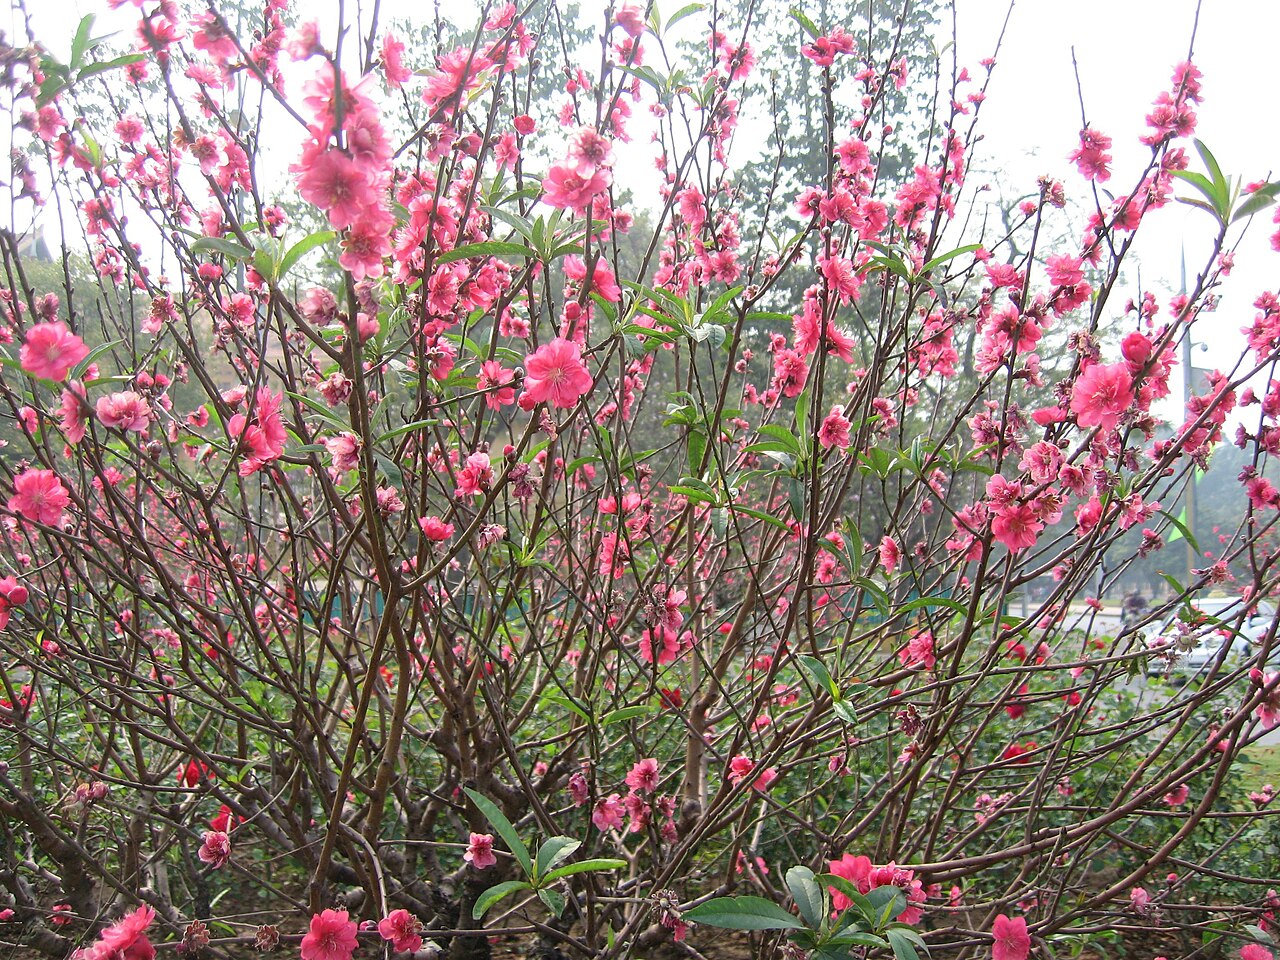 Hoa đào (Cherry blossom): Cùng nhau chiêm ngưỡng khung cảnh đẹp đến nao lòng của hoa đào. Với màu hồng tươi sáng, nó là biểu tượng của sự may mắn và niềm vui trong văn hóa Việt Nam. Hãy thưởng thức cảnh quan tuyệt đẹp này và để tinh thần của bạn được ánh sáng bởi cái đẹp của hoa đào.